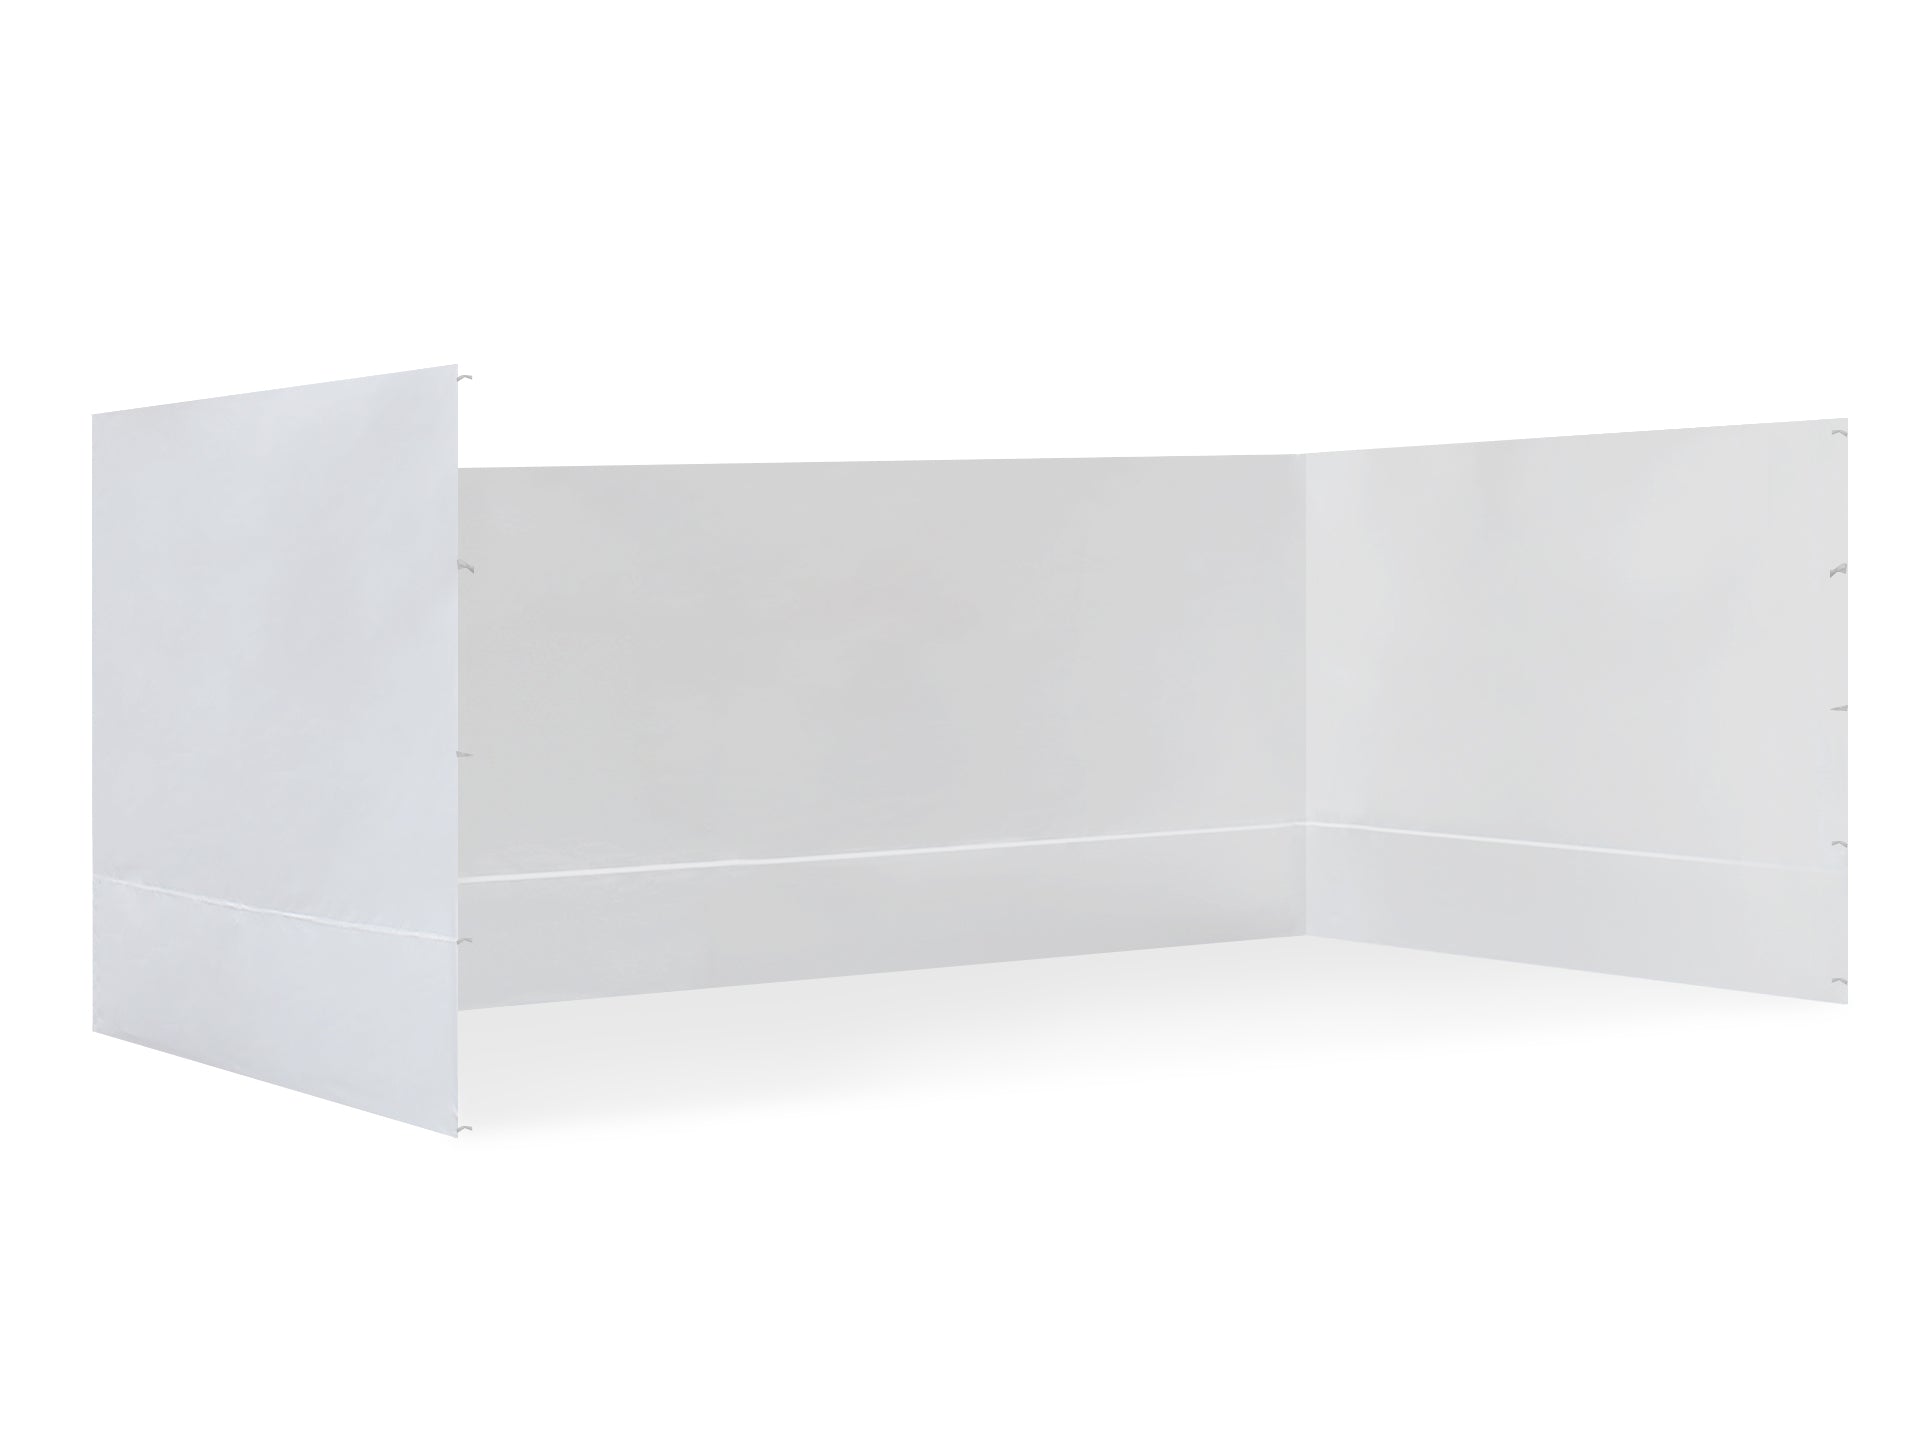 TOUGHOUT Breeze Gazebo Side Wall 3x4.5M - White